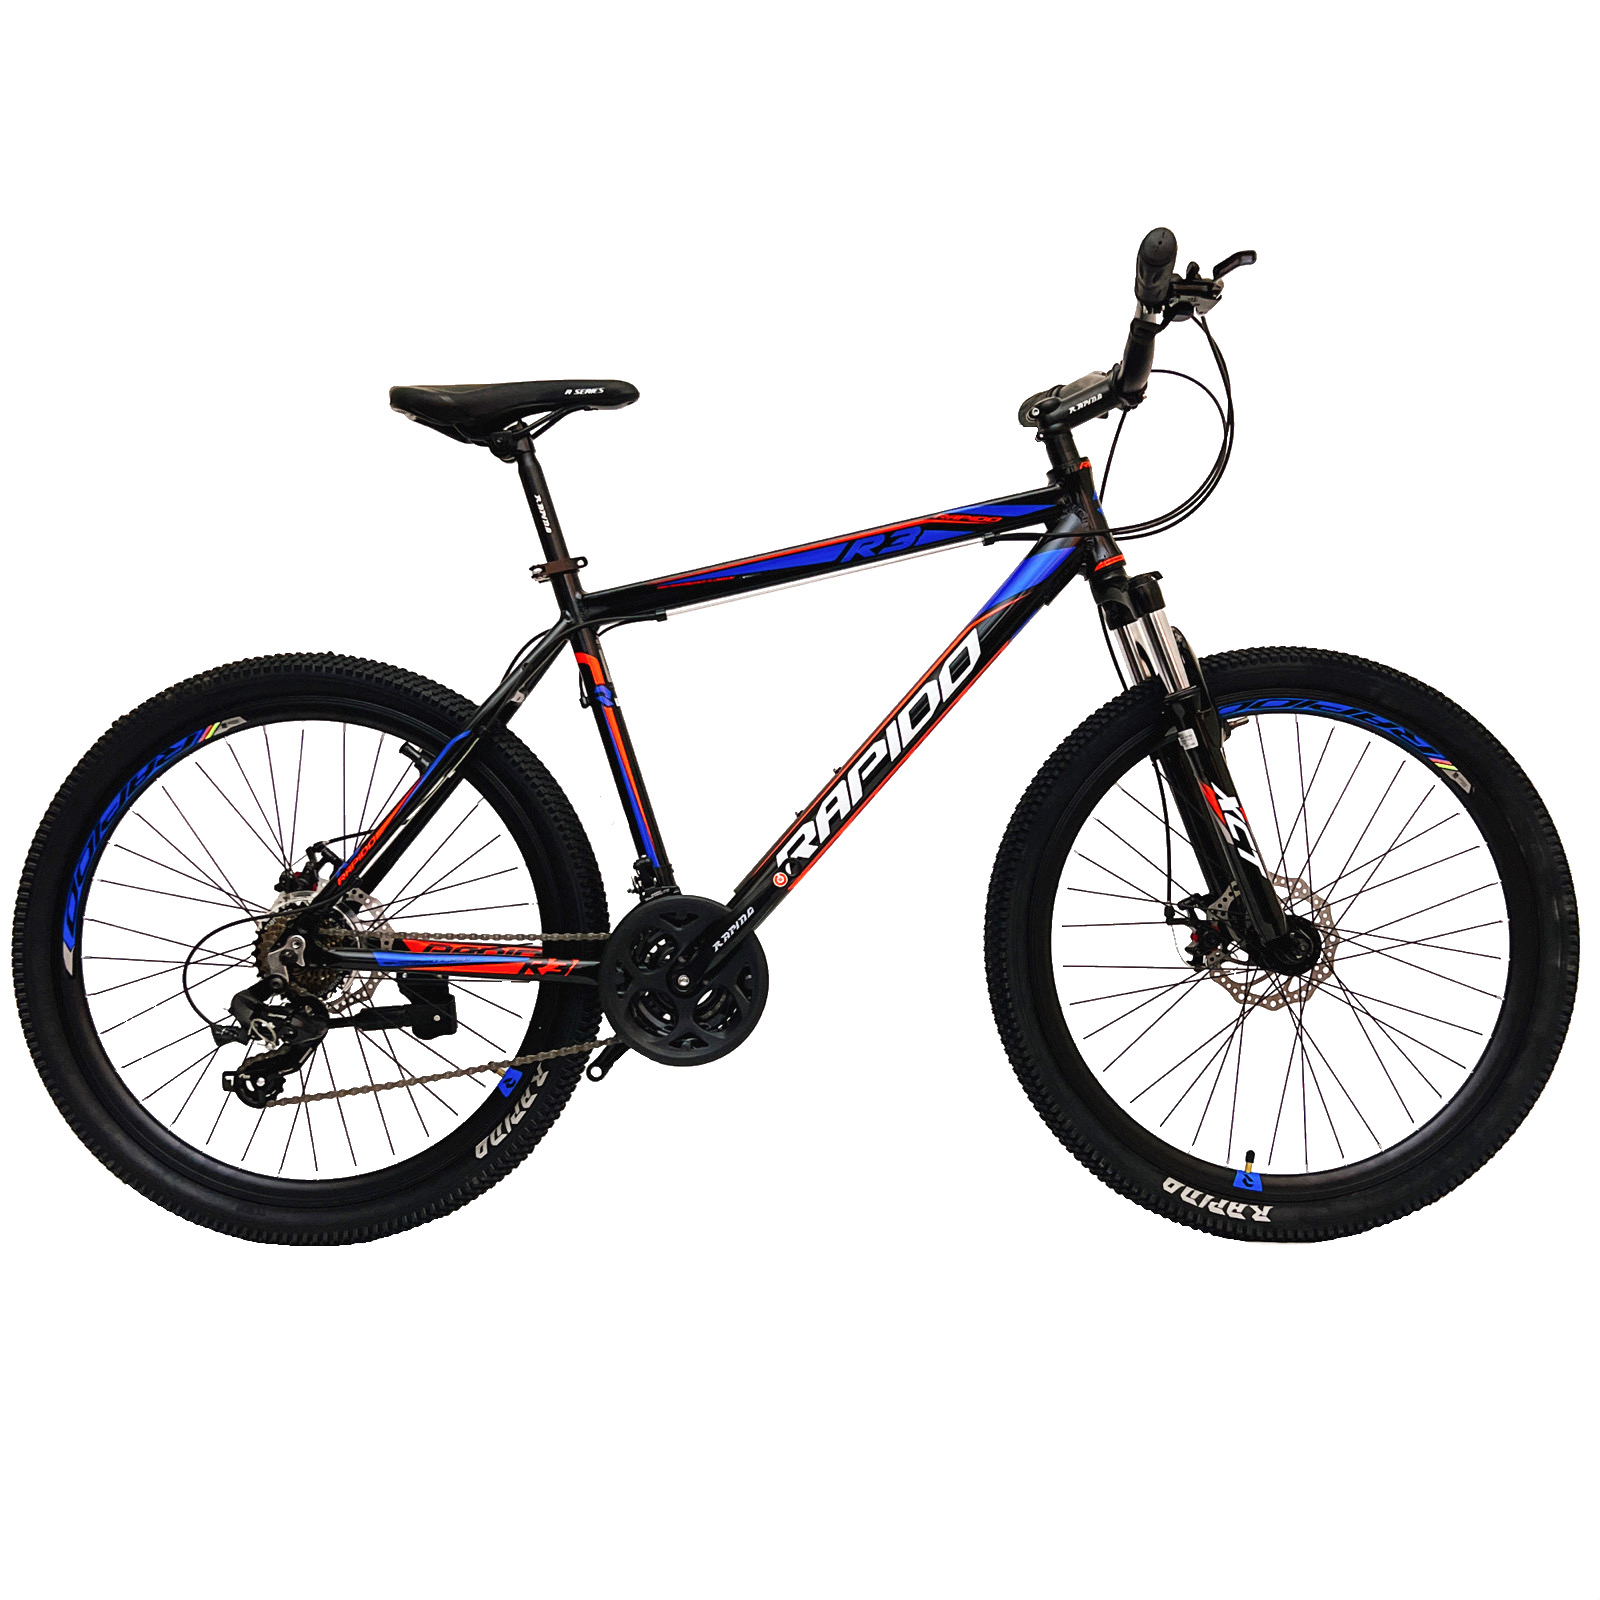 نکته خرید - قیمت روز دوچرخه کوهستان راپیدو مدل R3 سایز 26 خرید